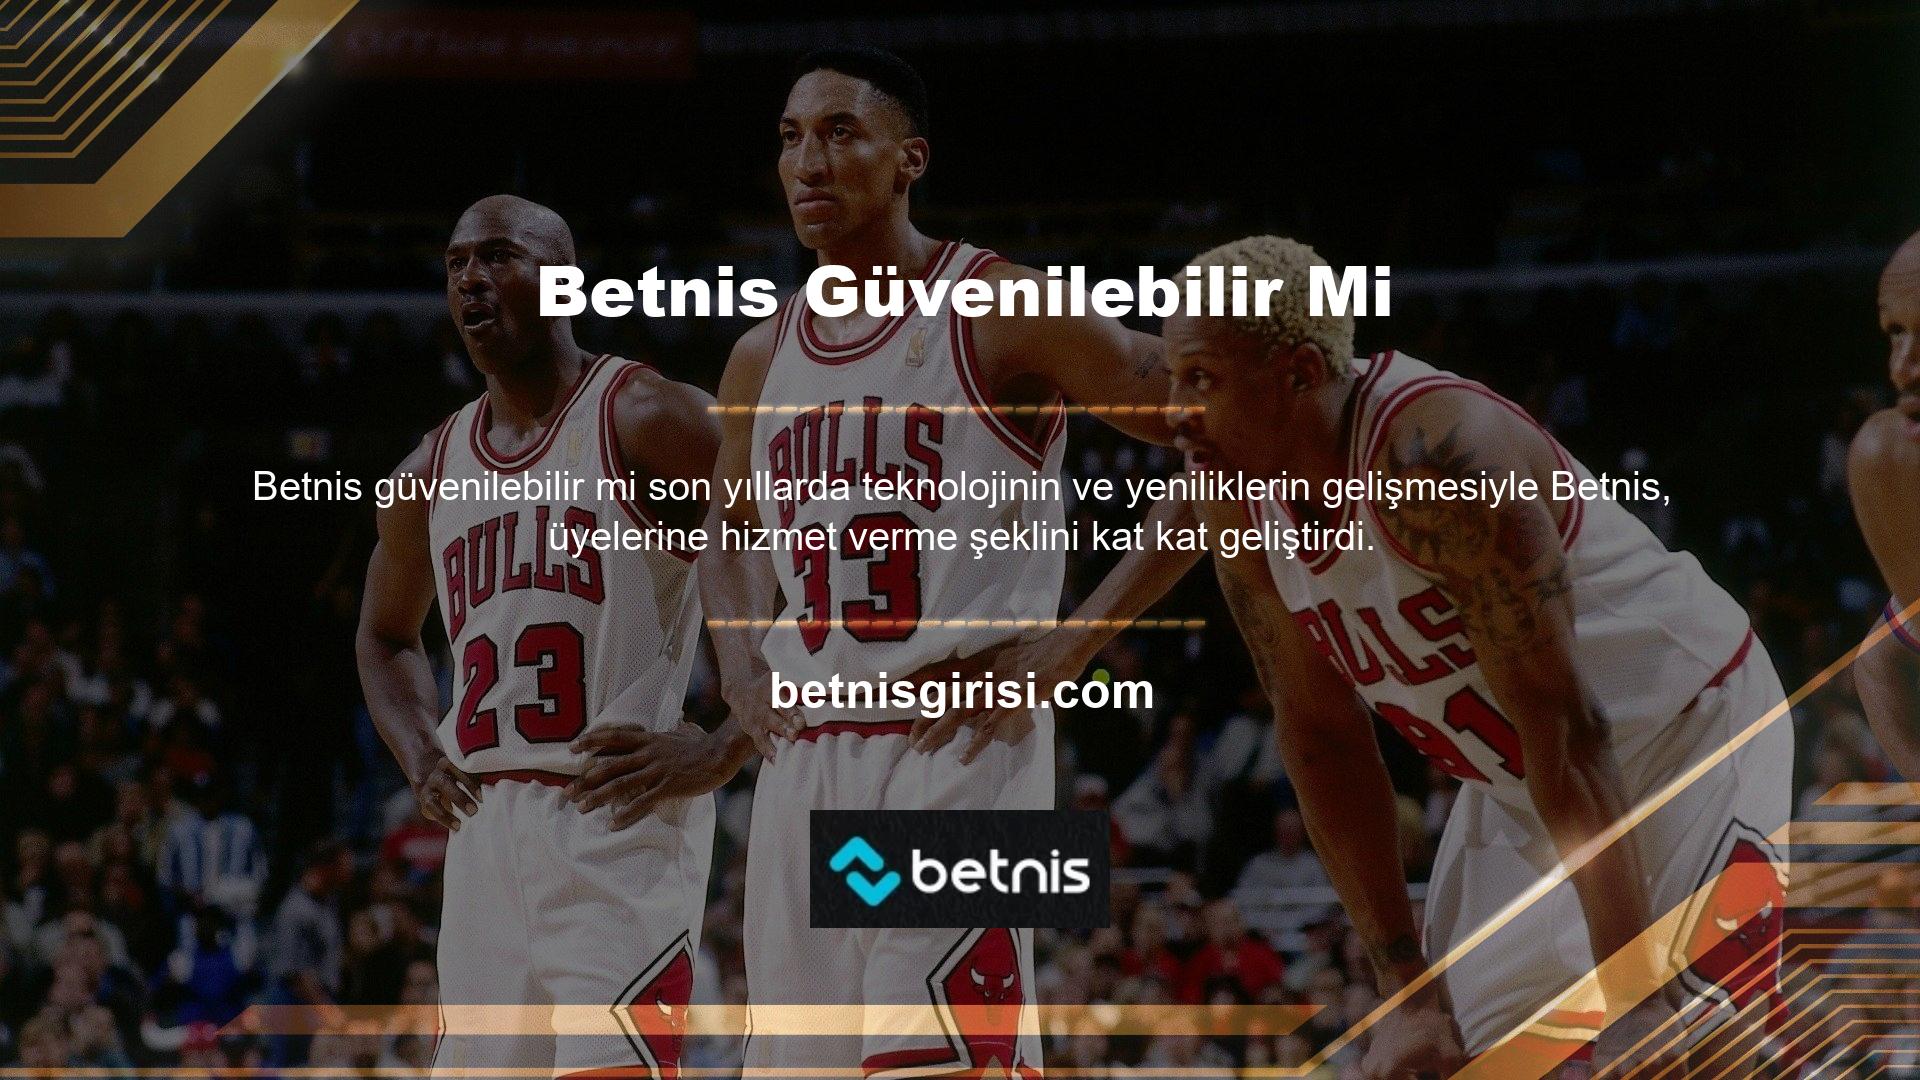 Betnis, Türkiye'de tanınmış bir çevrimiçi bahis şirketidir ve bir banka kadar güvenilirdir